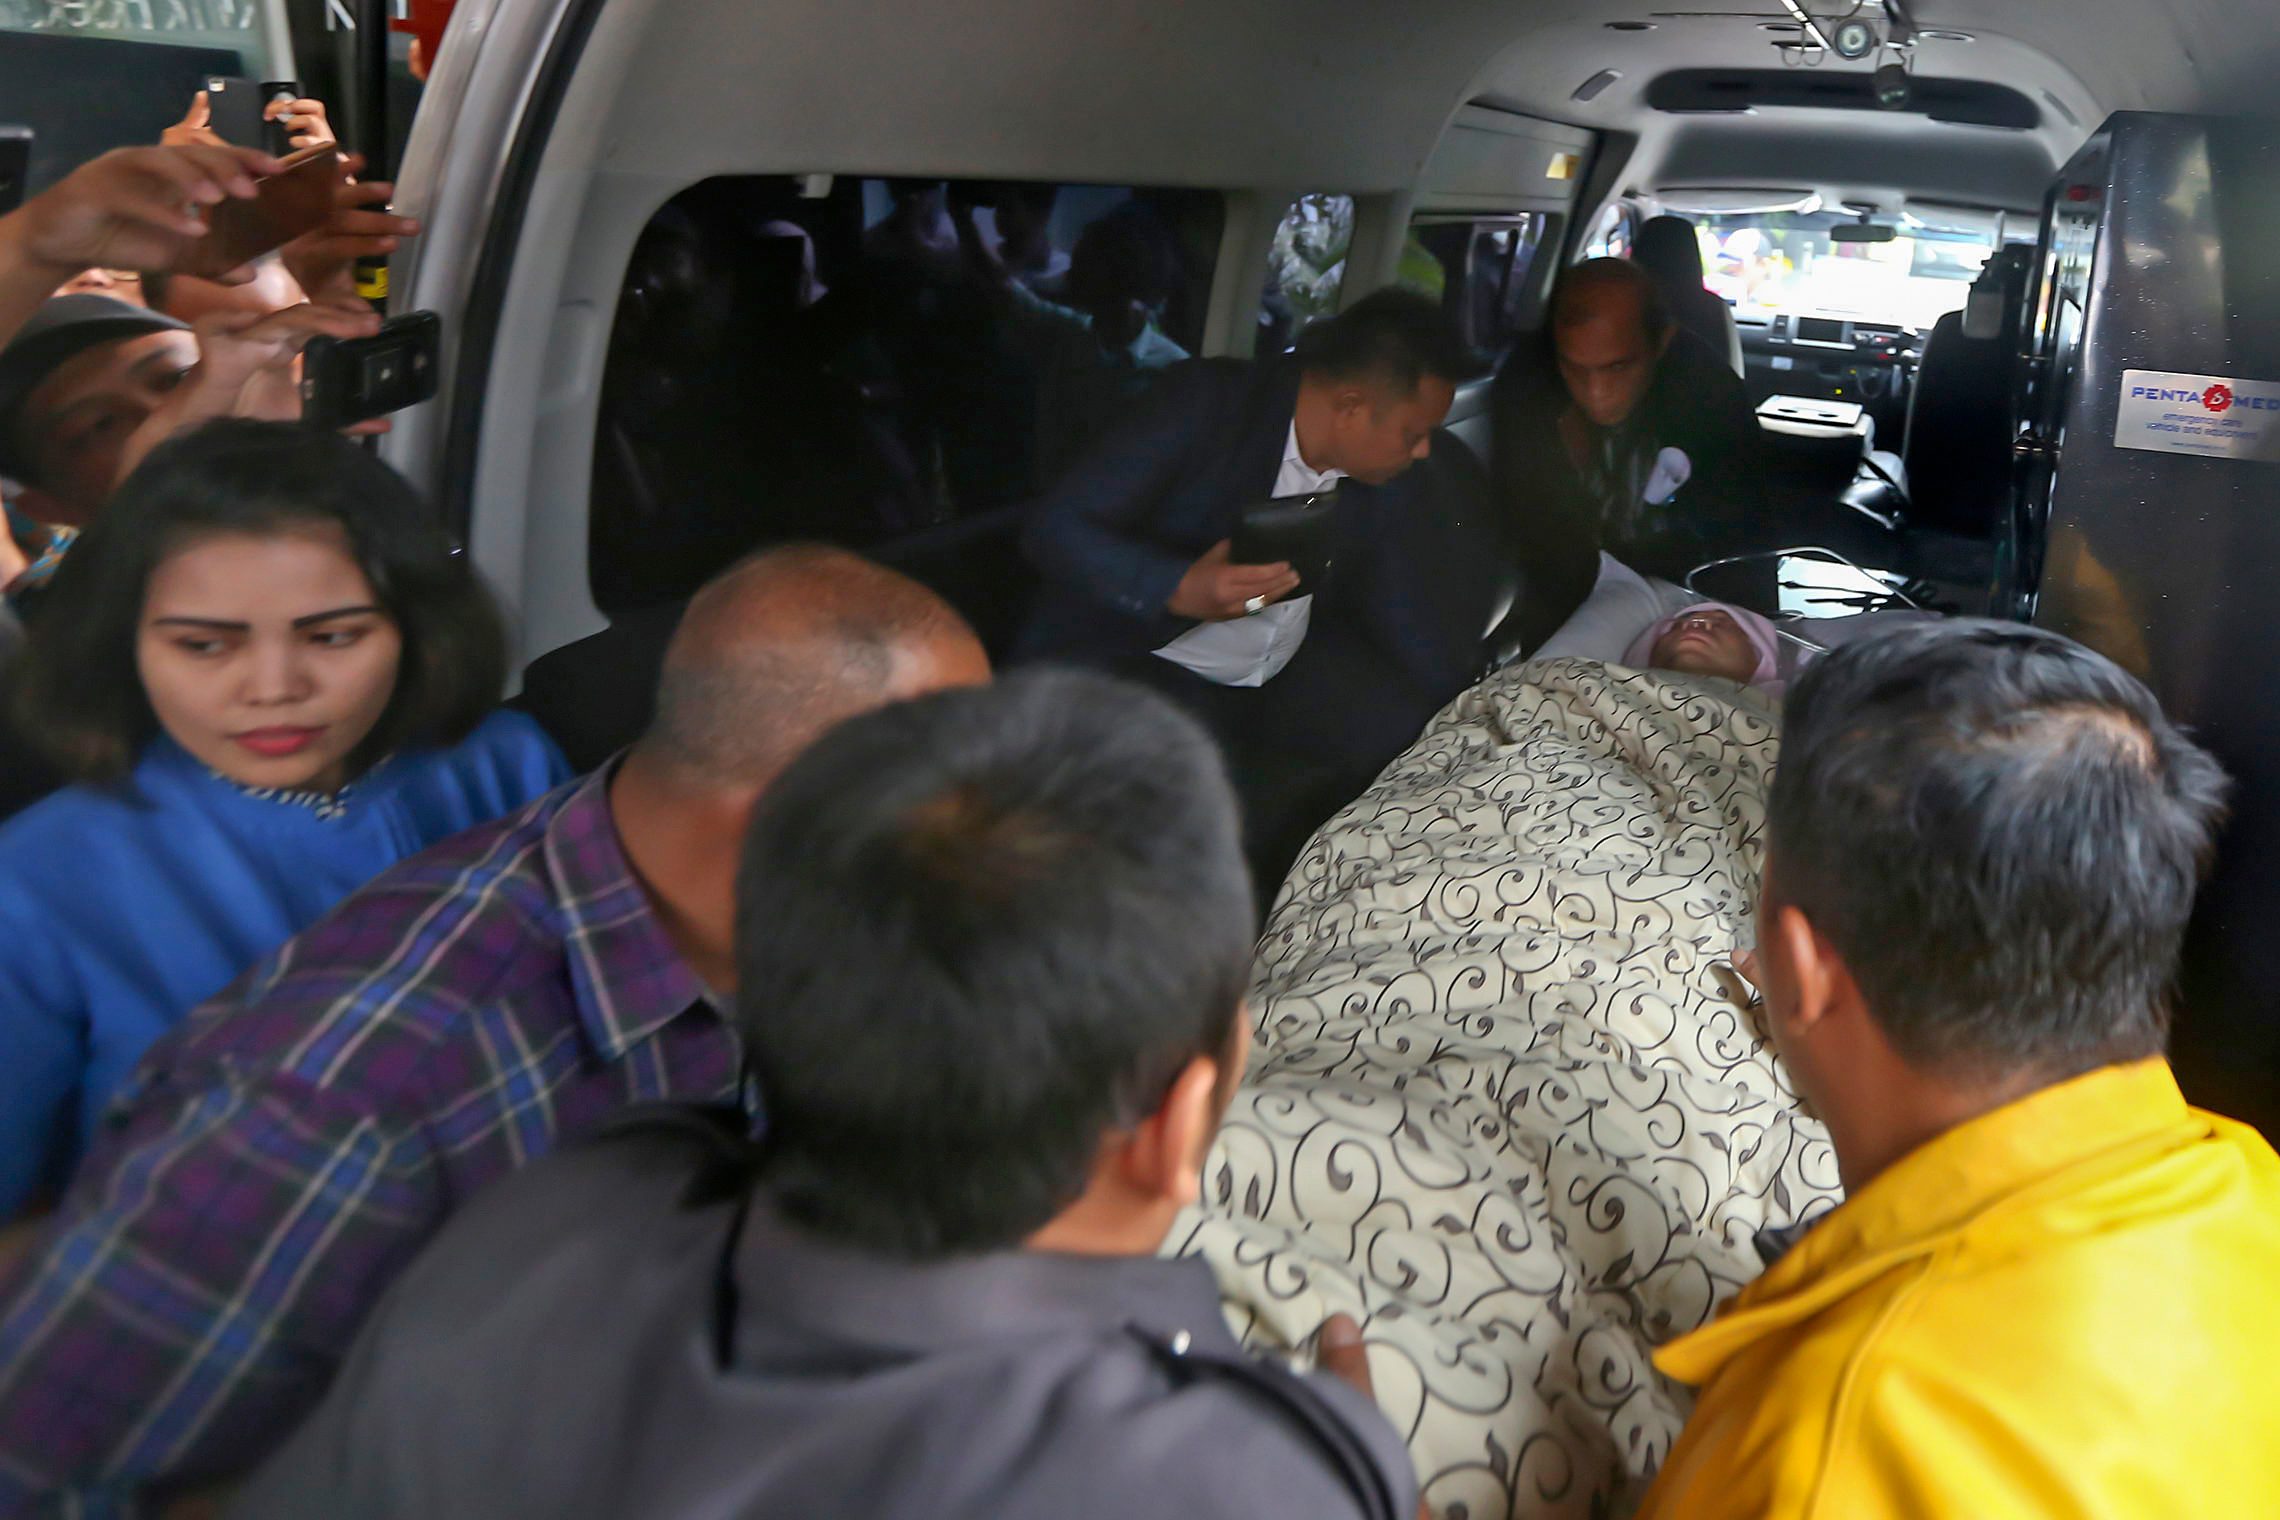 TIBA DI RSCM. Ketua DPR Setya Novanto dibawa keluar dari mobil ambulance setibanya di RSCM Kencana, Jakarta Pusat, Jumat, 17 November. Foto oleh Ubaidillah/ANTARA 